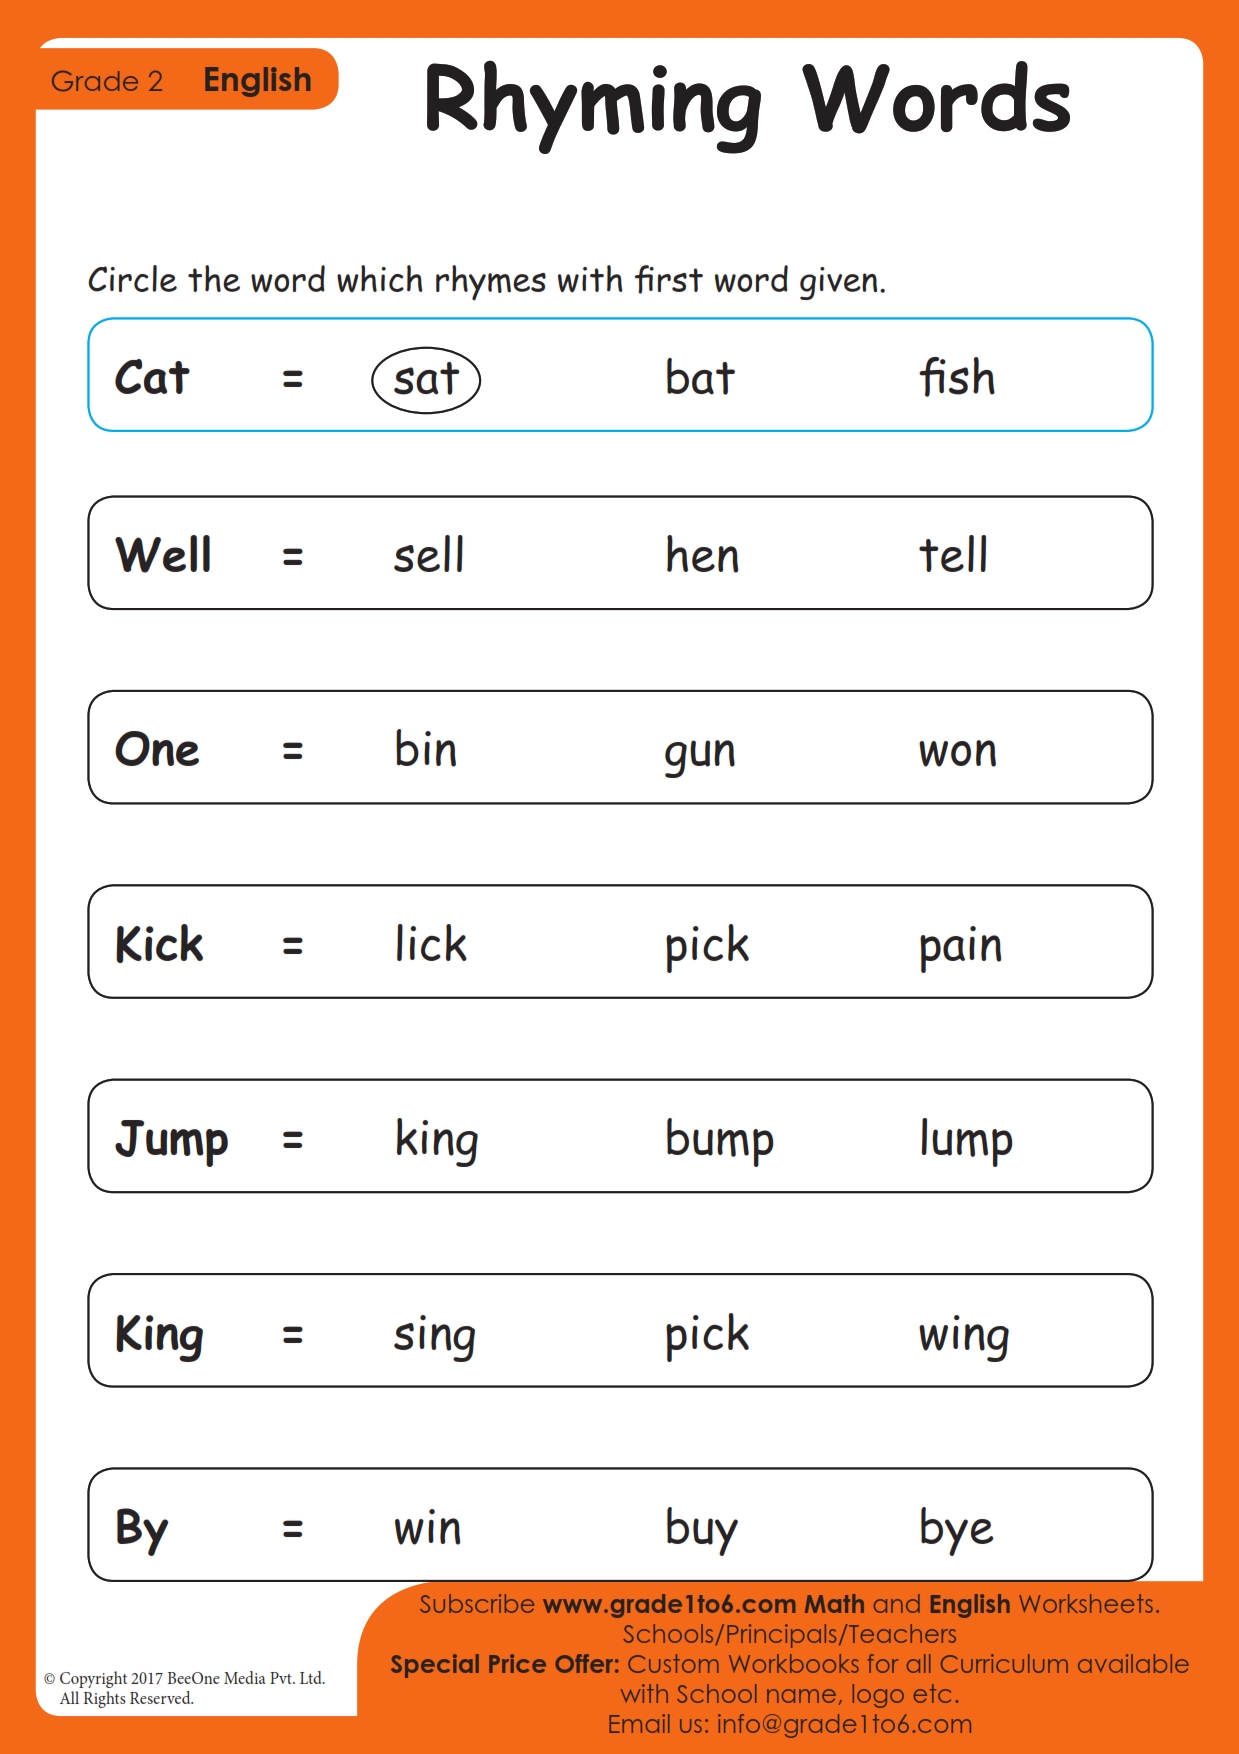 rhyming-words-worksheets-grade-2